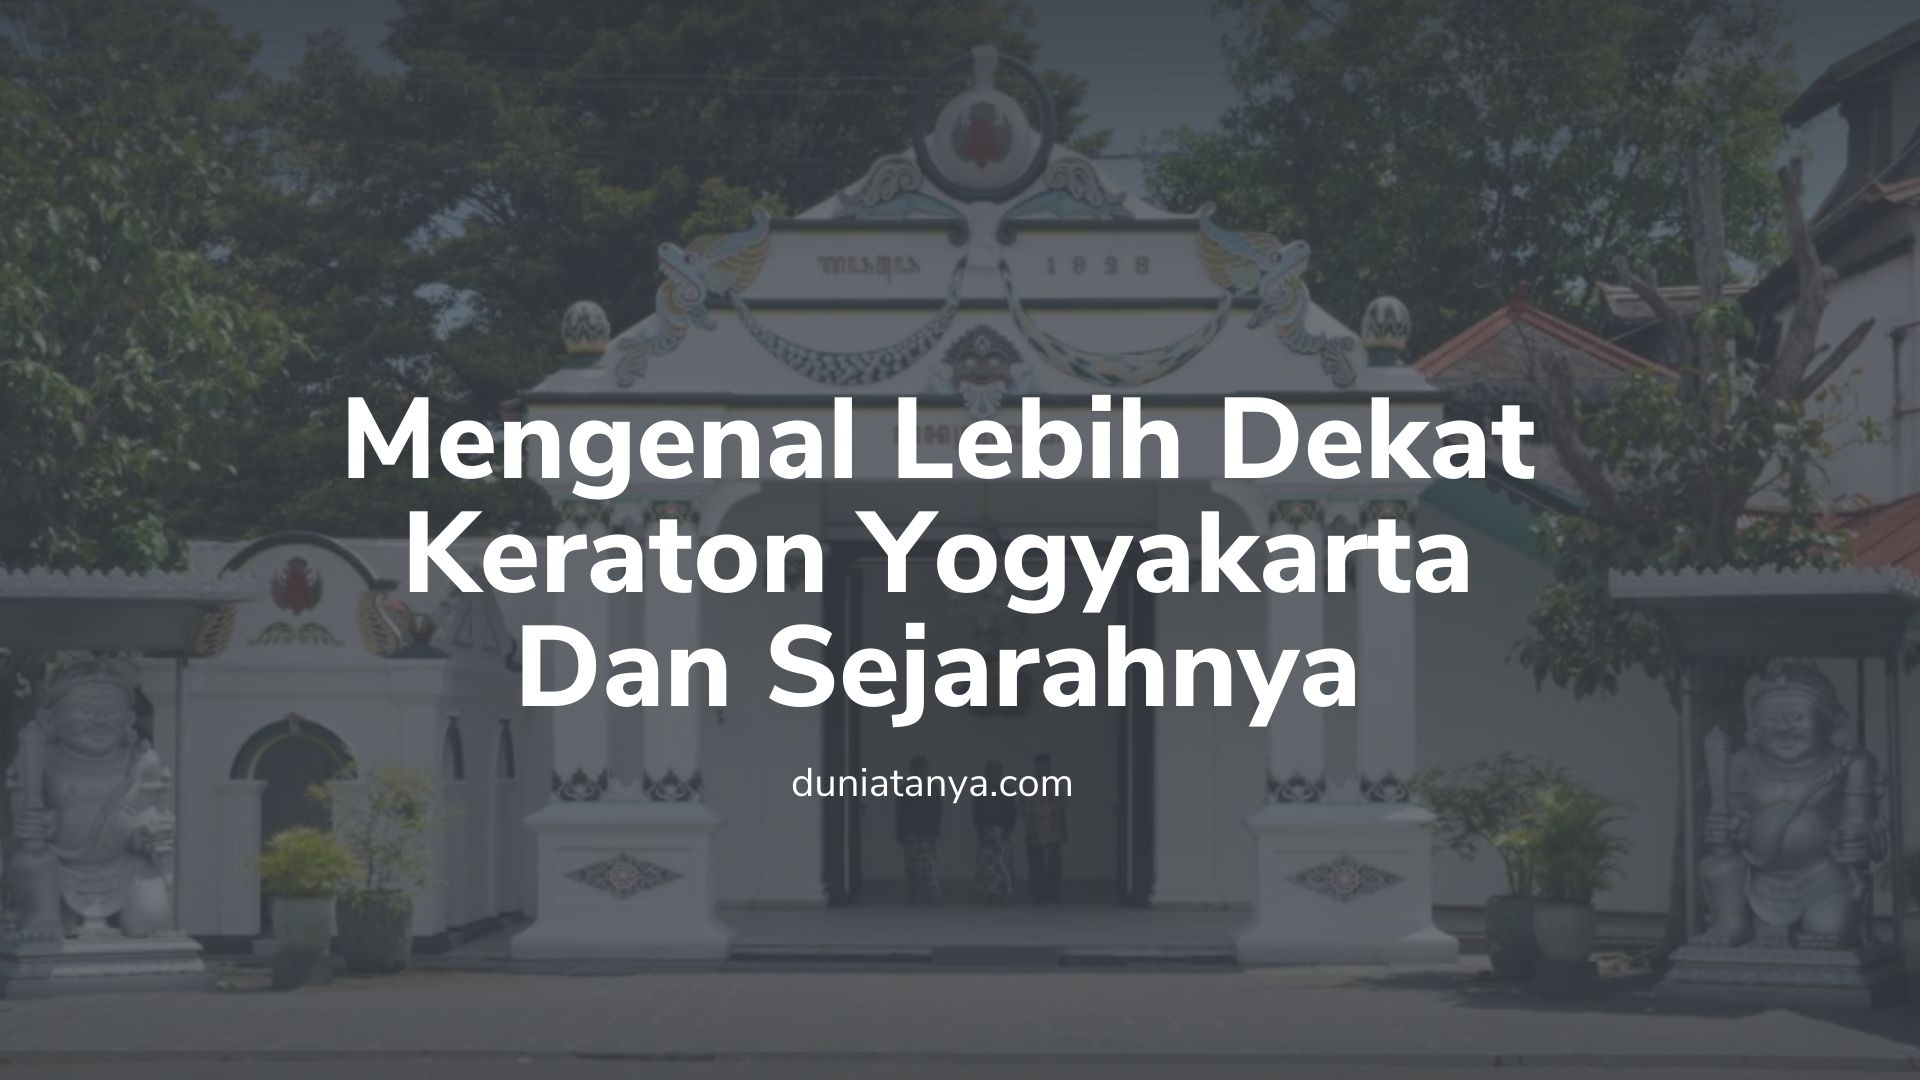 You are currently viewing Mengenal Lebih Dekat Keraton Yogyakarta Dan Sejarahnya